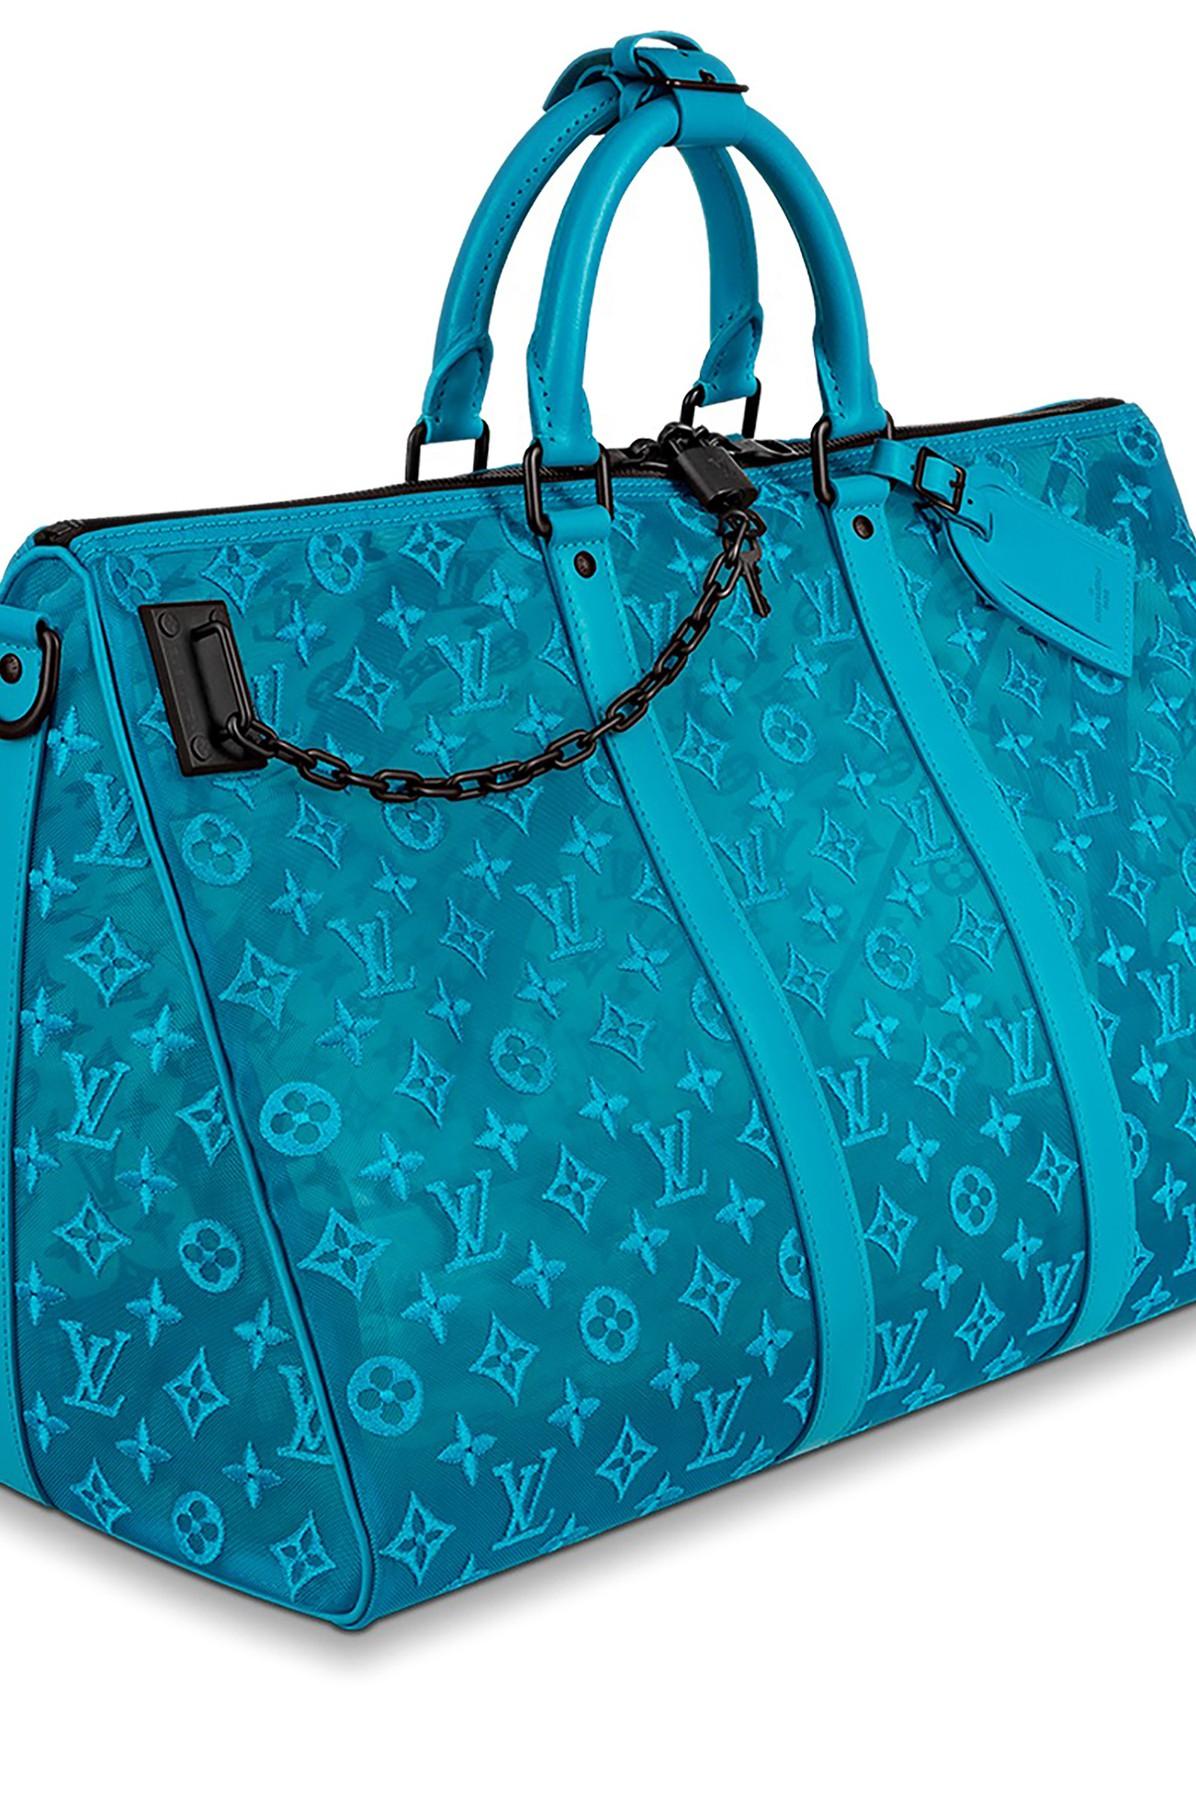 Louis Vuitton Keepall Bandouliere 50 Degrade Blue Green Taurillon Trav